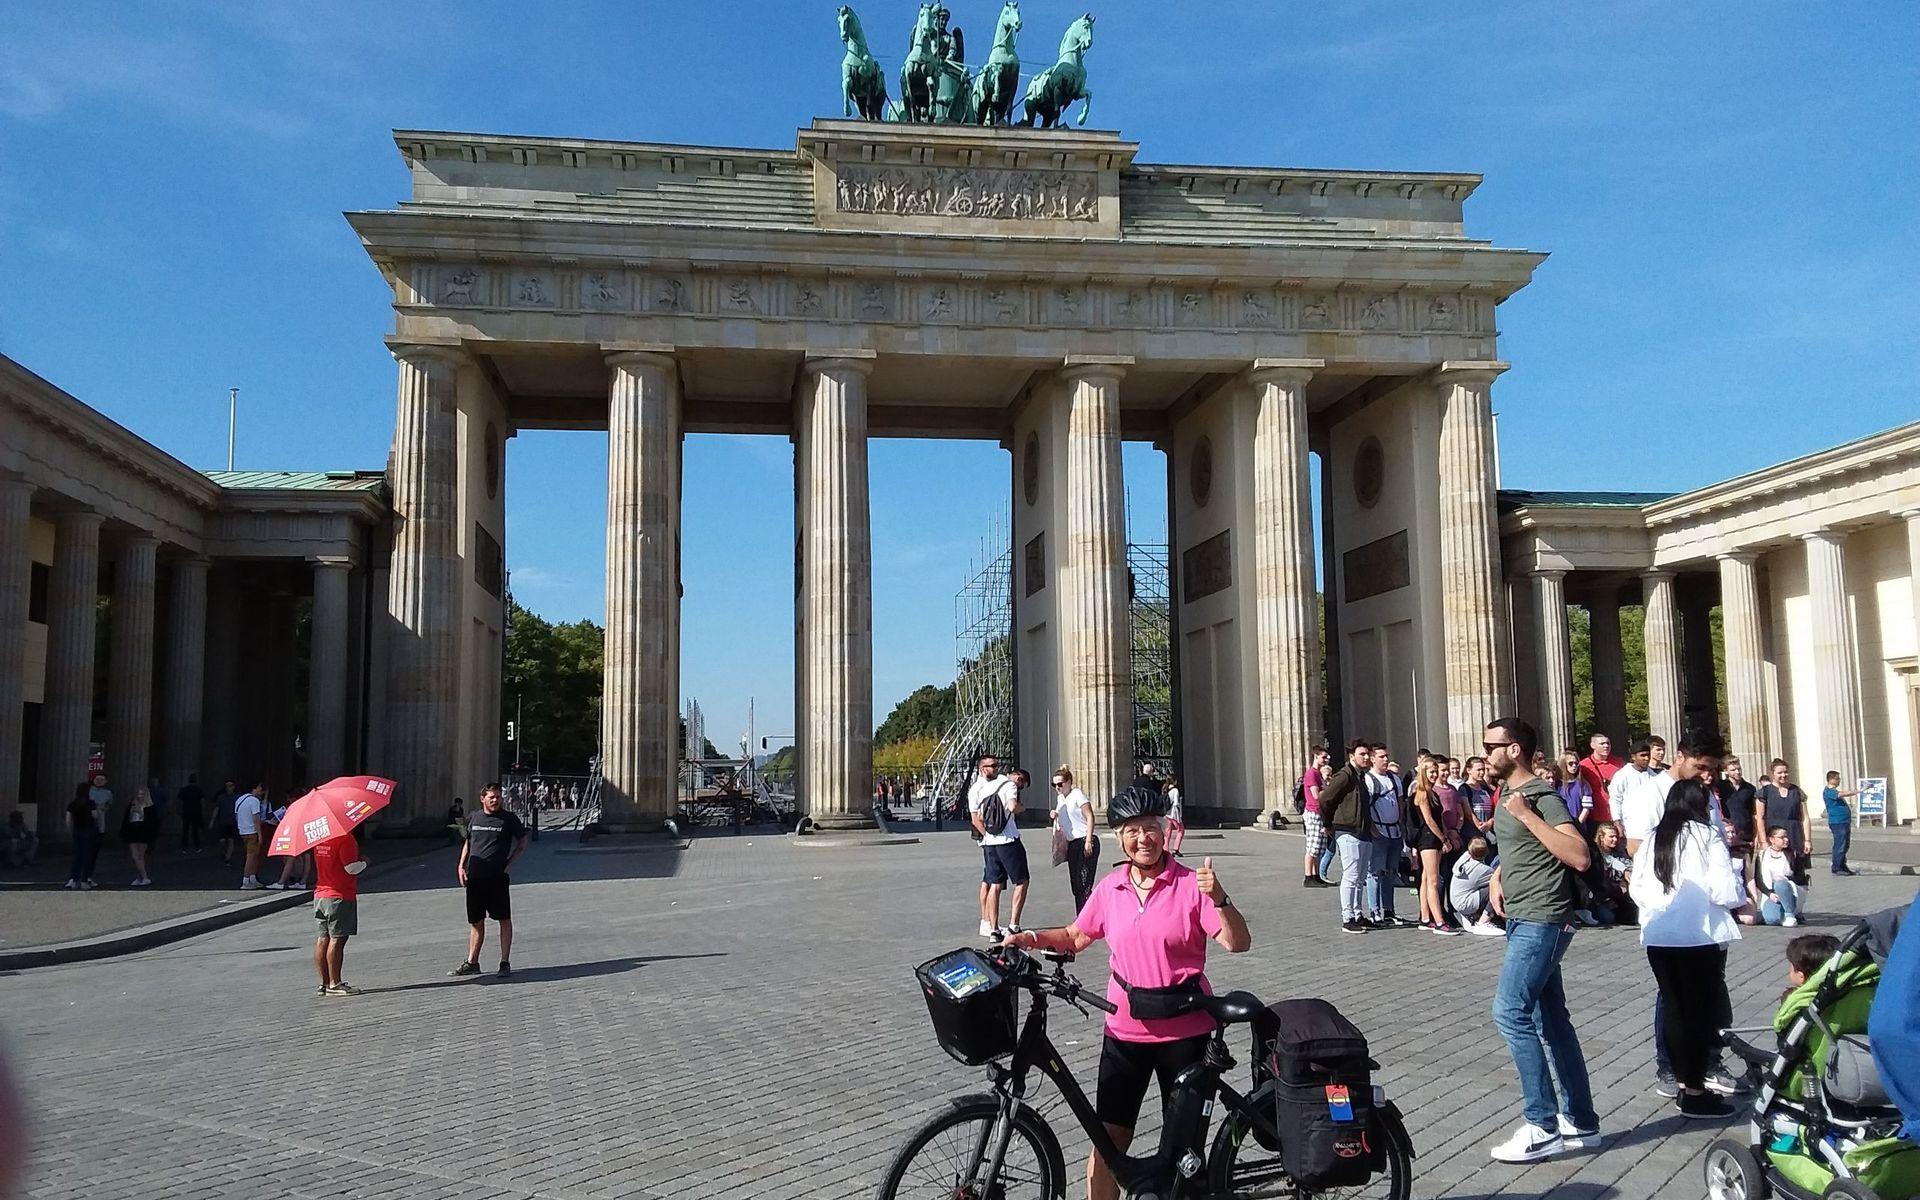 Som ung bodde Ingrid fyra år i Berlin. Så det var med en speciell känsla som hon stannade till i den tyska huvudstaden under sin cykeltur. Här poserar hon framför Brandenburger Tor.